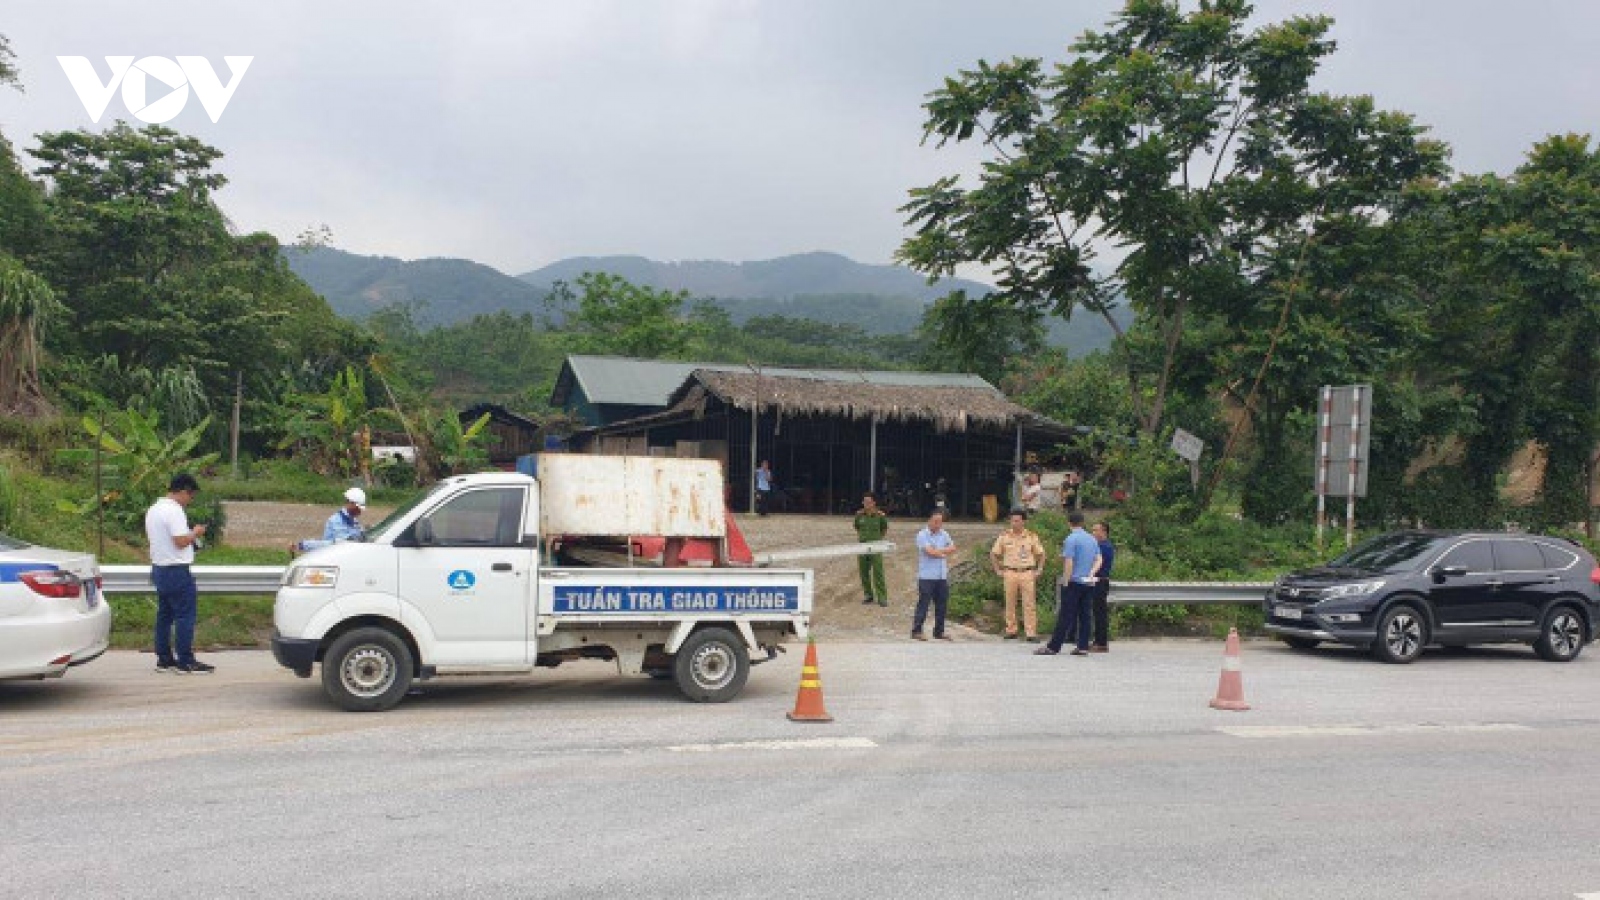 Cao tốc Nội Bài - Lào Cai bị “băm nát” hàng rào bảo vệ vì quán cơm ven đường